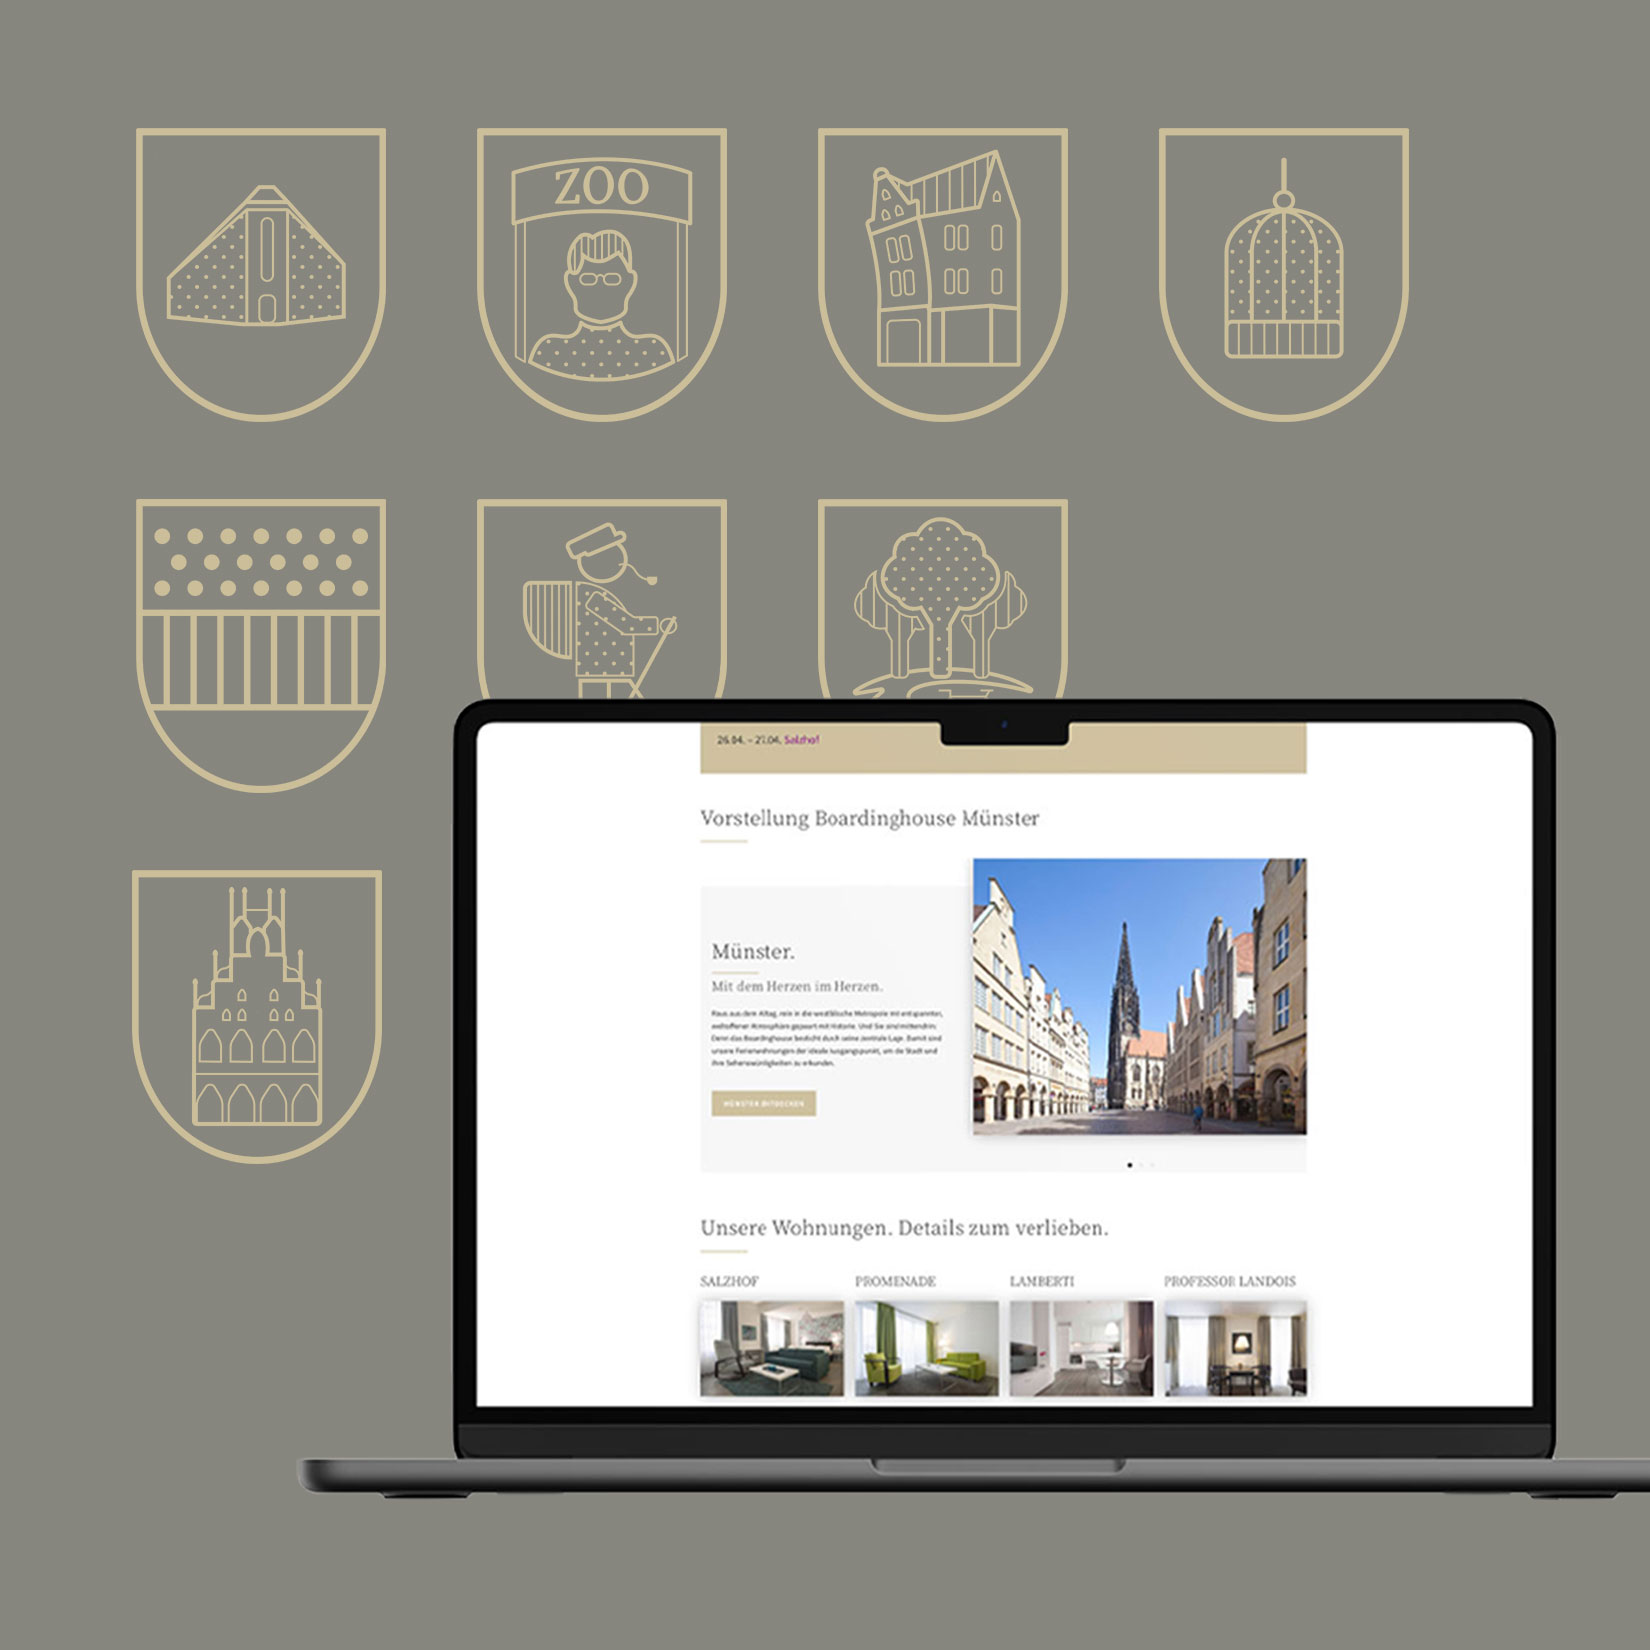 Webdesign für Ferienwohnungen und Hotels, Buchung und Information in modernem Style